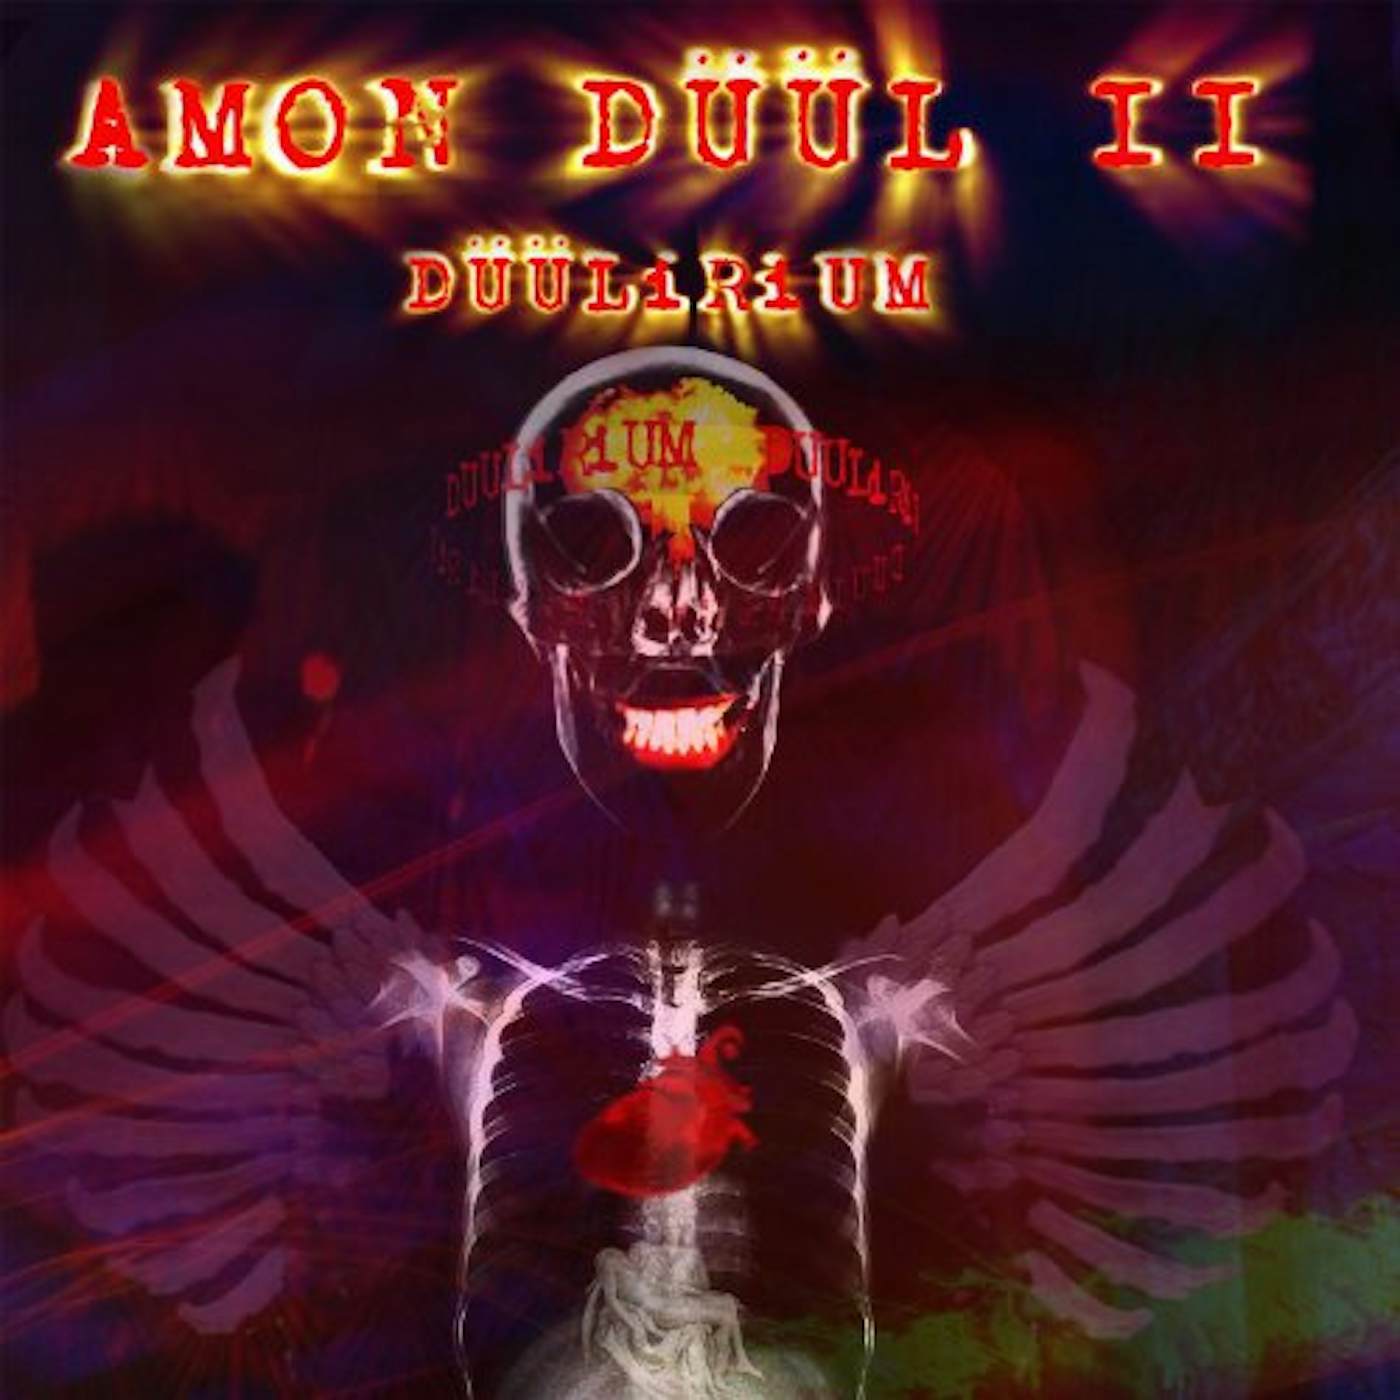 Amon Düül II DUULIRIUM Vinyl Record